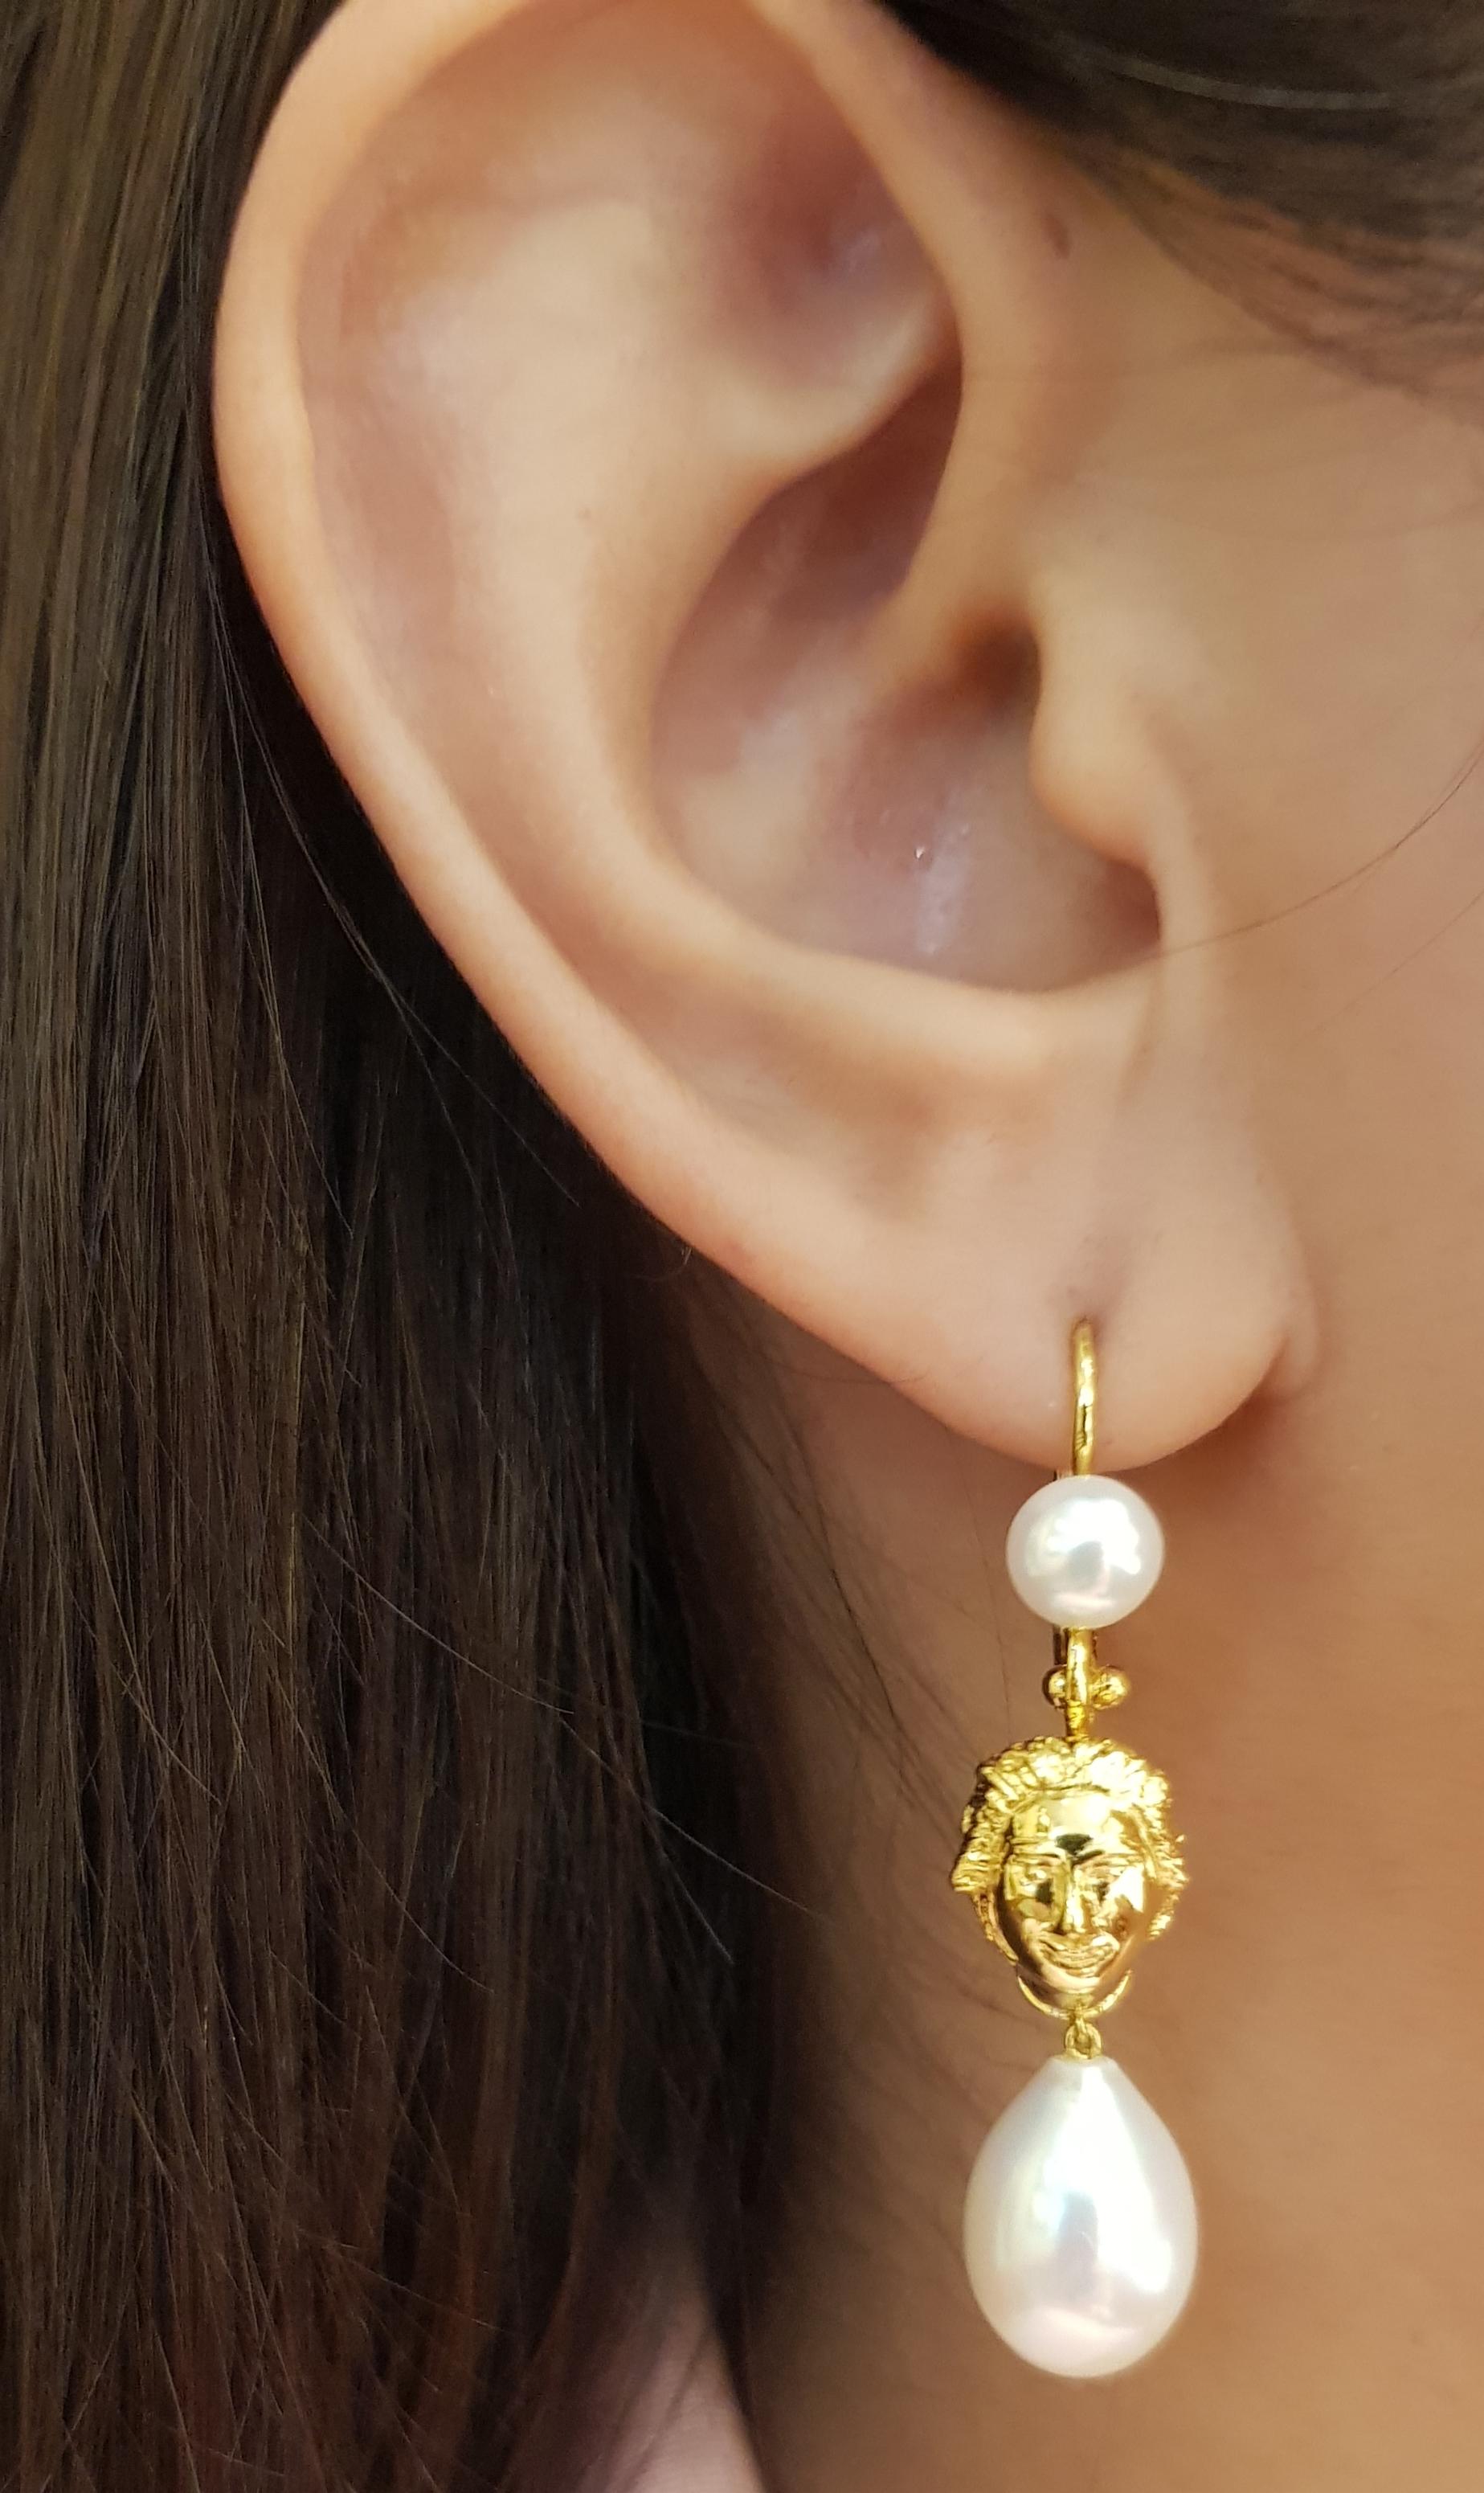 Süßwasserperlen-Ohrringe in 18 Karat Goldfassung

Breite:  1.0 cm 
Länge:  4.5 cm
Gesamtgewicht: 4,69 Gramm

